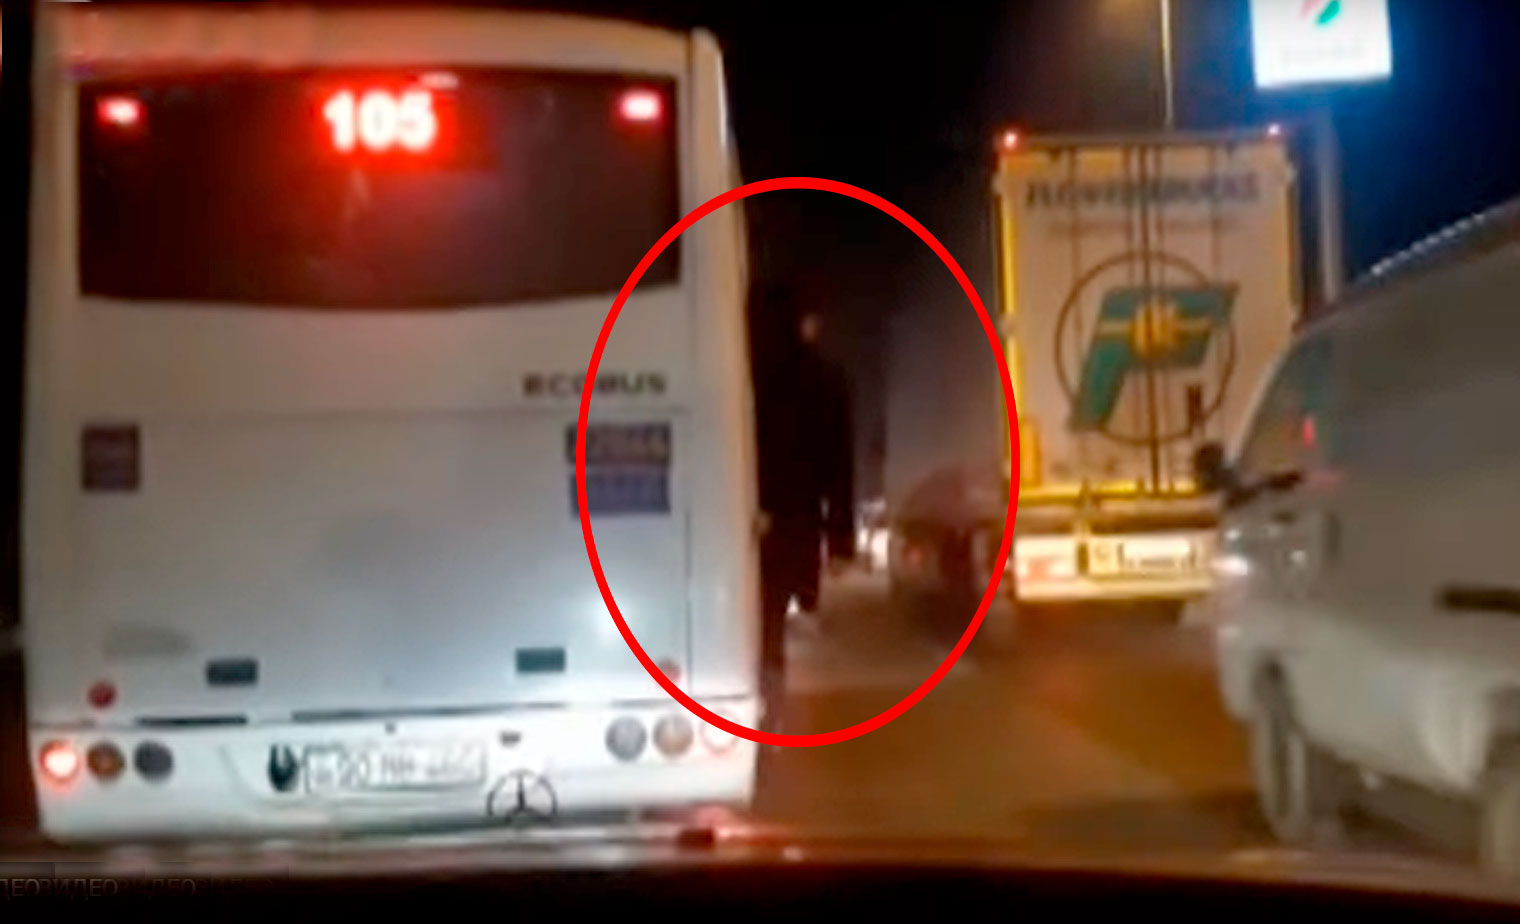 TƏHLÜKƏ: Bakıda avtobus qapısı açıq vəziyyətdə sərnişin daşıyır - VİDEO